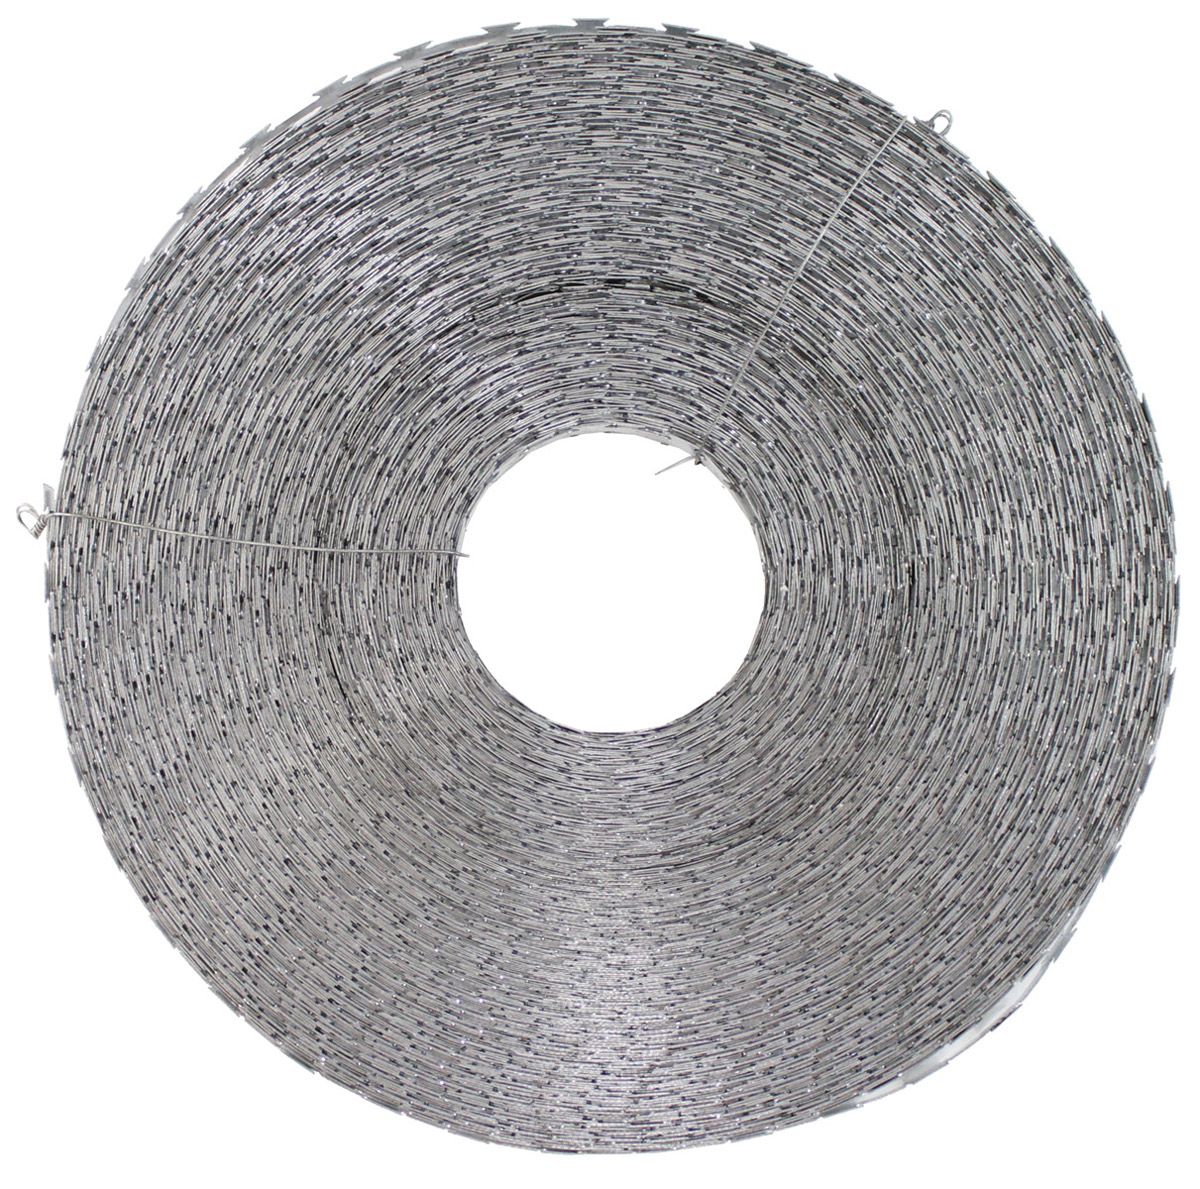 Image of Band-Stacheldraht, Metall verzinkt, 120 m, Durchm. 30 cm